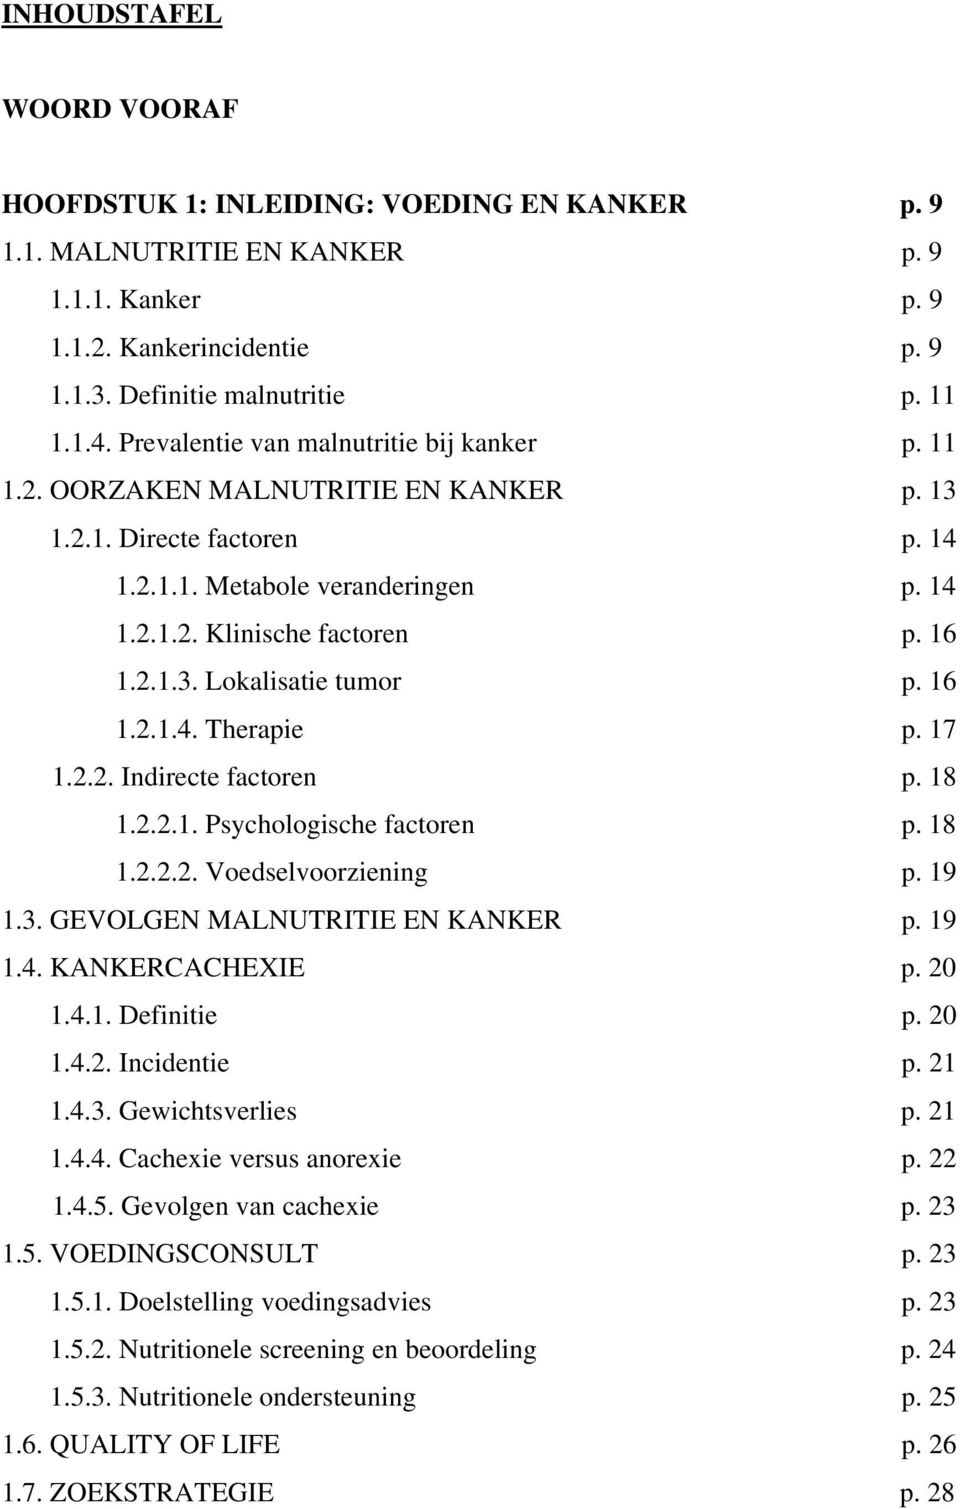 16 1.2.1.4. Therapie p. 17 1.2.2. Indirecte factoren p. 18 1.2.2.1. Psychologische factoren p. 18 1.2.2.2. Voedselvoorziening p. 19 1.3. GEVOLGEN MALNUTRITIE EN KANKER p. 19 1.4. KANKERCACHEXIE p.